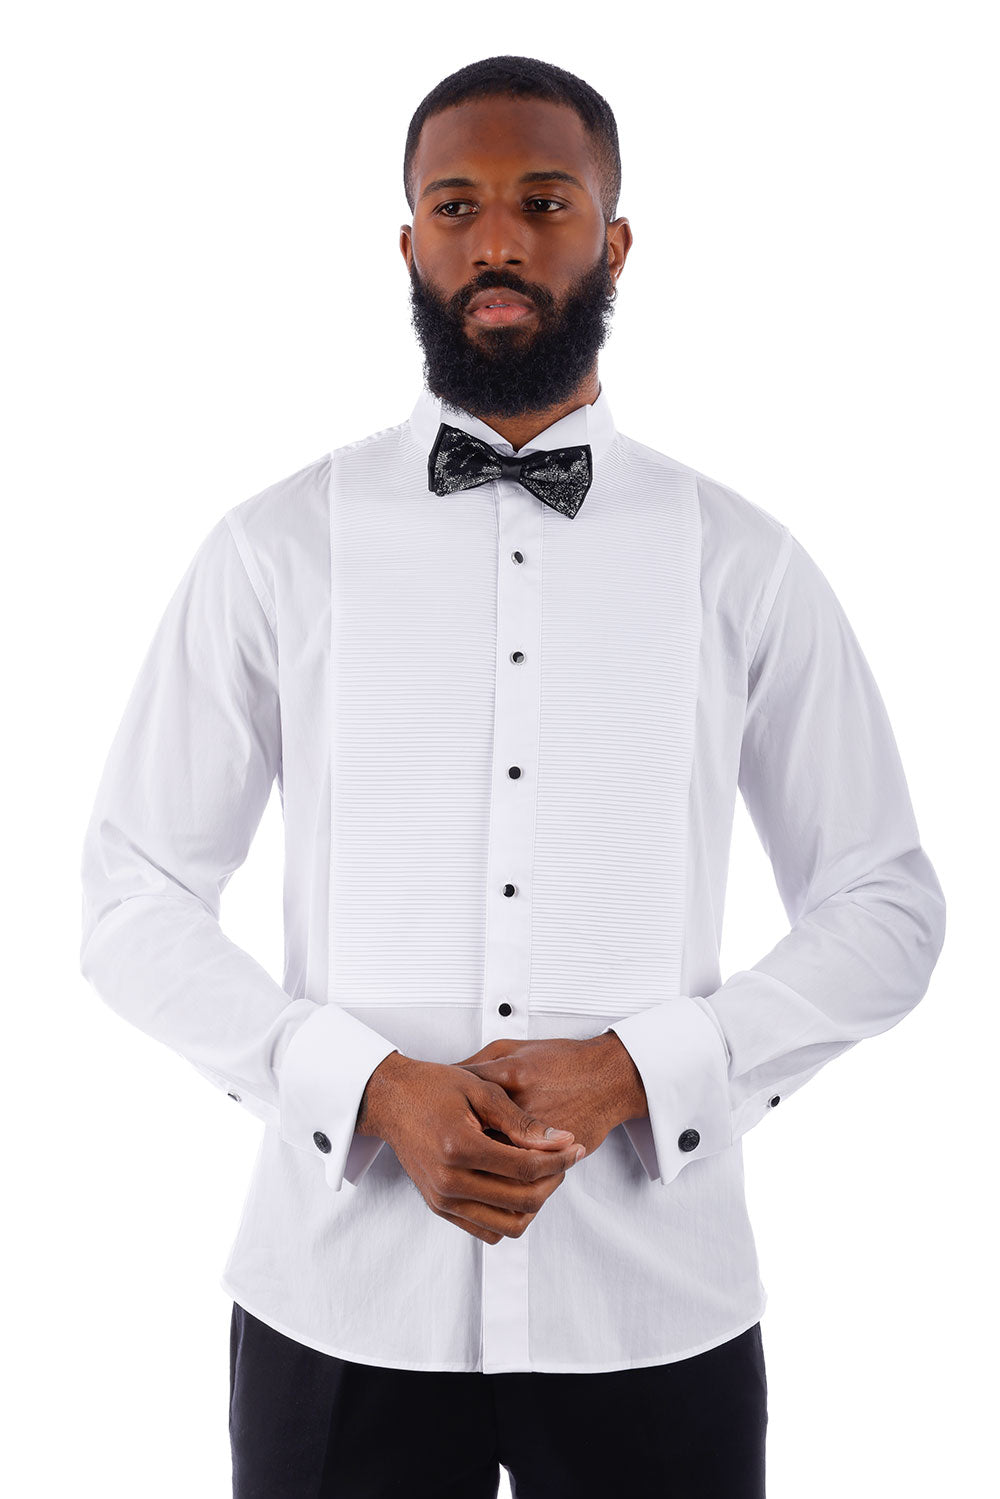 BARABAS Men's Solid Color Tuxedo Button Down Long Sleeve Shirt 4txs01 White